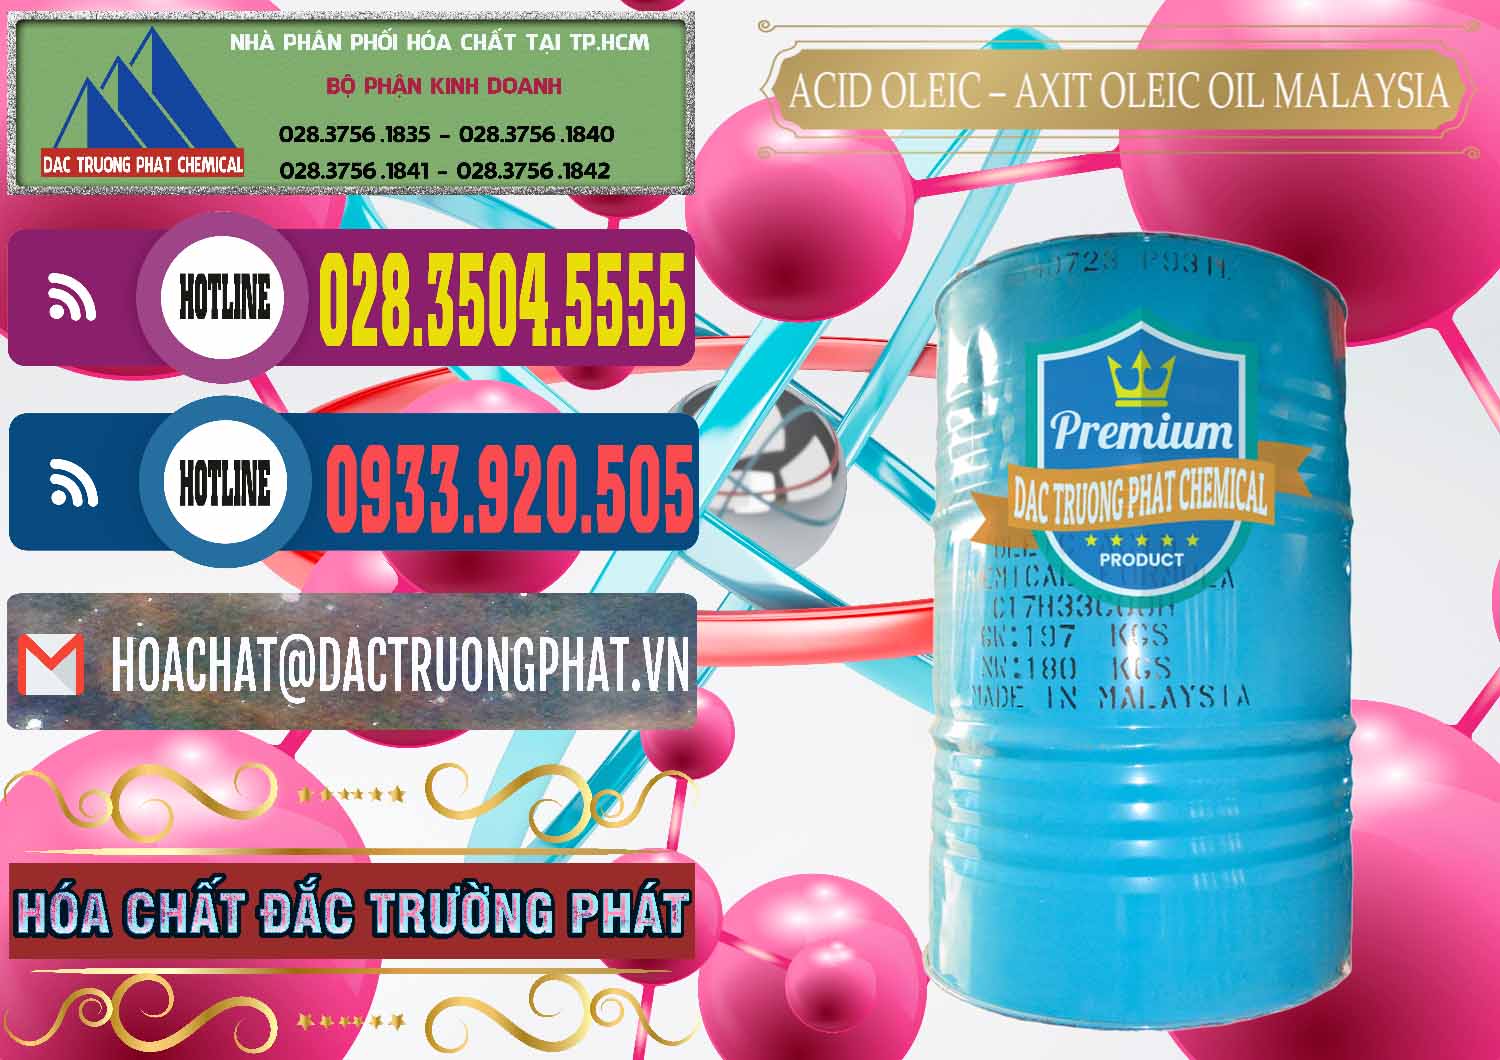 Công ty nhập khẩu _ bán Acid Oleic – Axit Oleic Oil Malaysia - 0013 - Cty chuyên cung cấp _ nhập khẩu hóa chất tại TP.HCM - muabanhoachat.com.vn